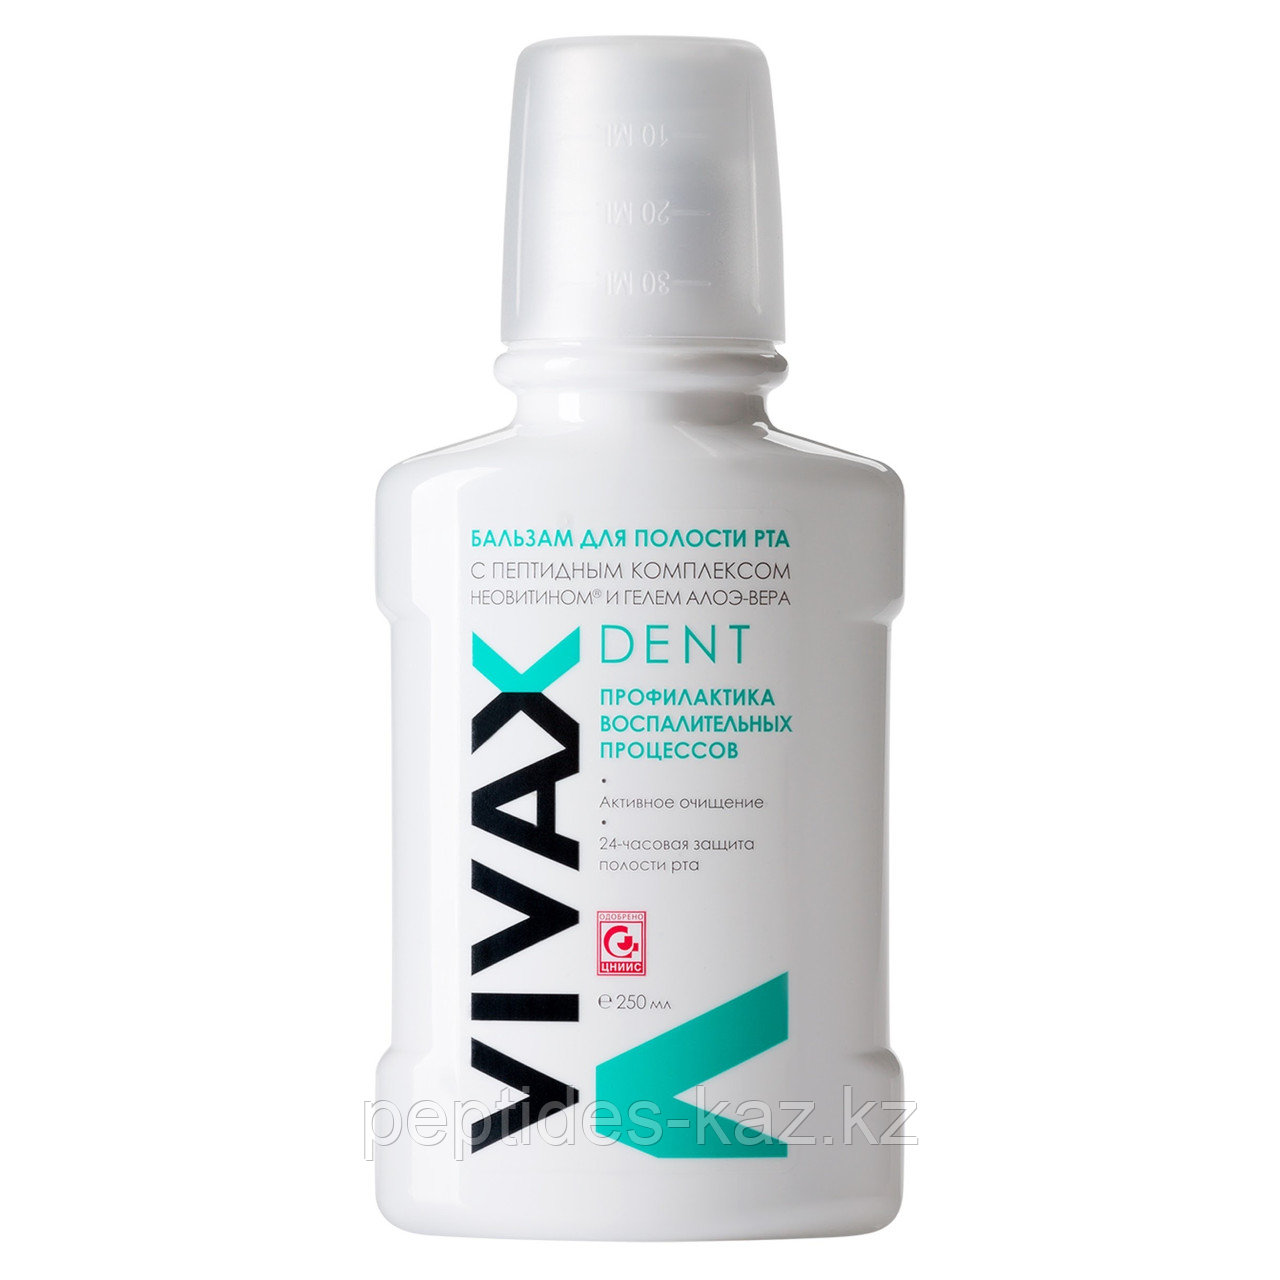 VIVAX DENT бальзам для полости рта с пептидами, Неовитином и гелем Алоэ вера 250 мл